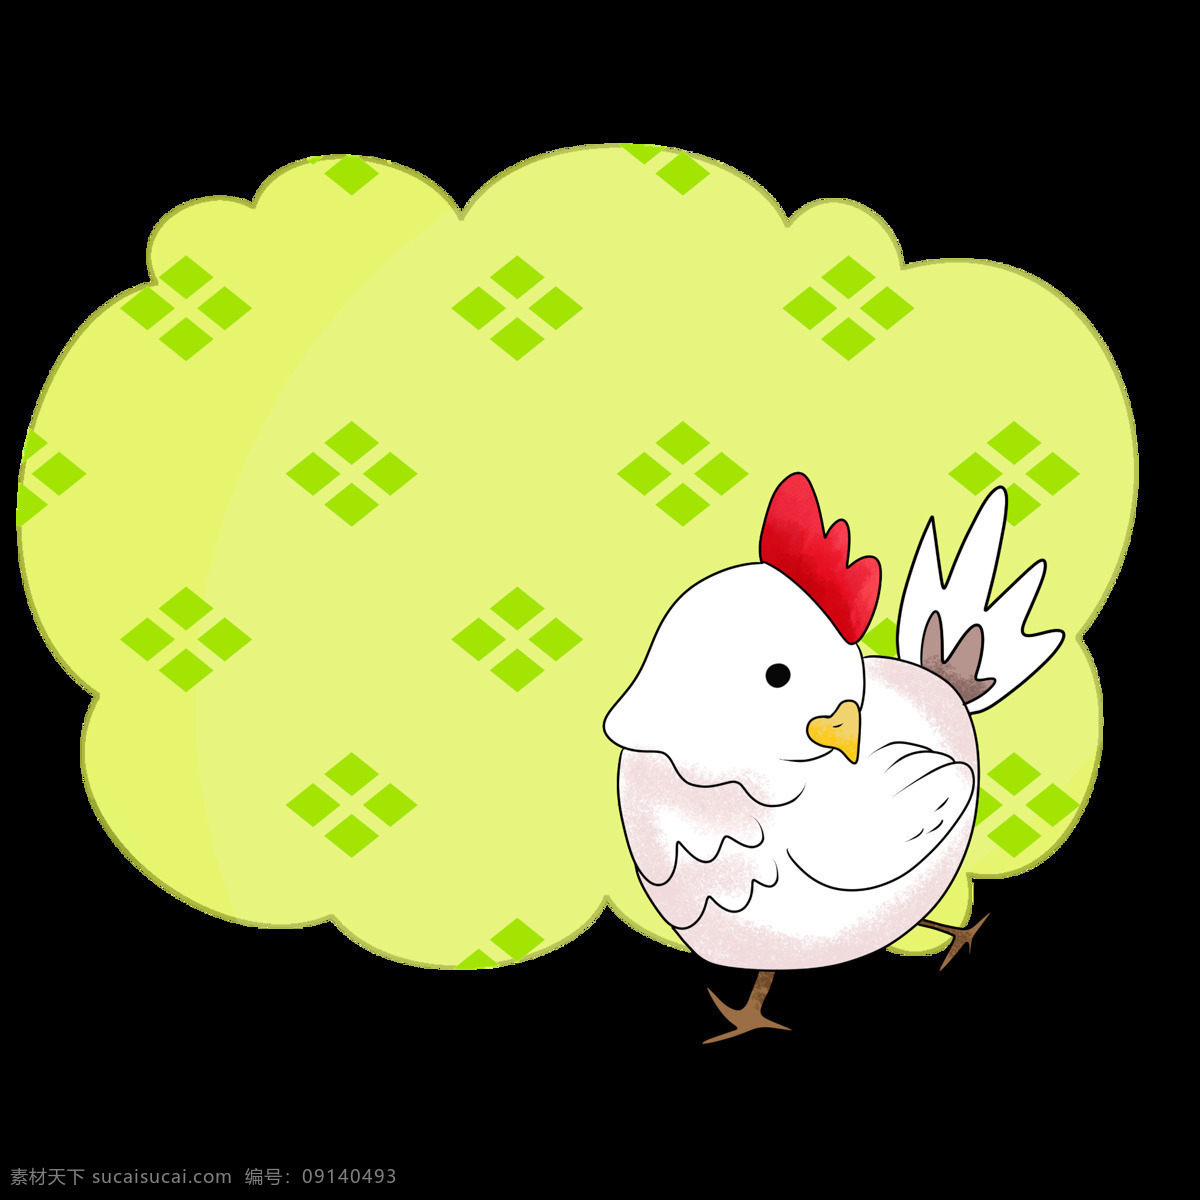 白色 小鸡 边框 插画 唯美边框 边框装饰 边框插画 手绘边框 白色的小鸡 漂亮 漂亮的边框